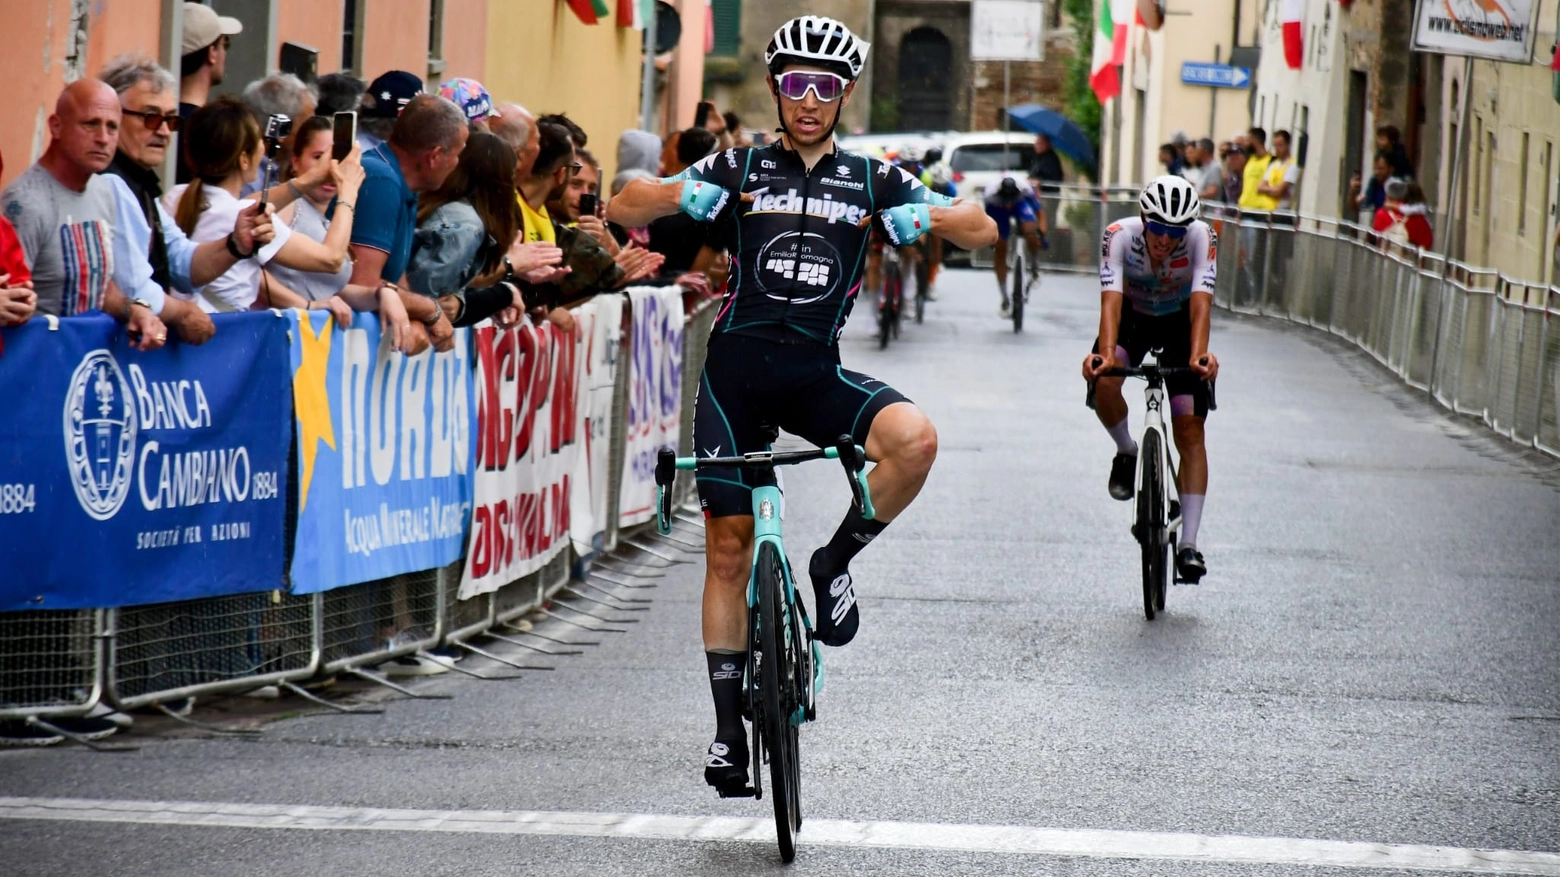 La vittoria di Nicolò Garibbo a Marcialla (Foto R. Fruzzetti)